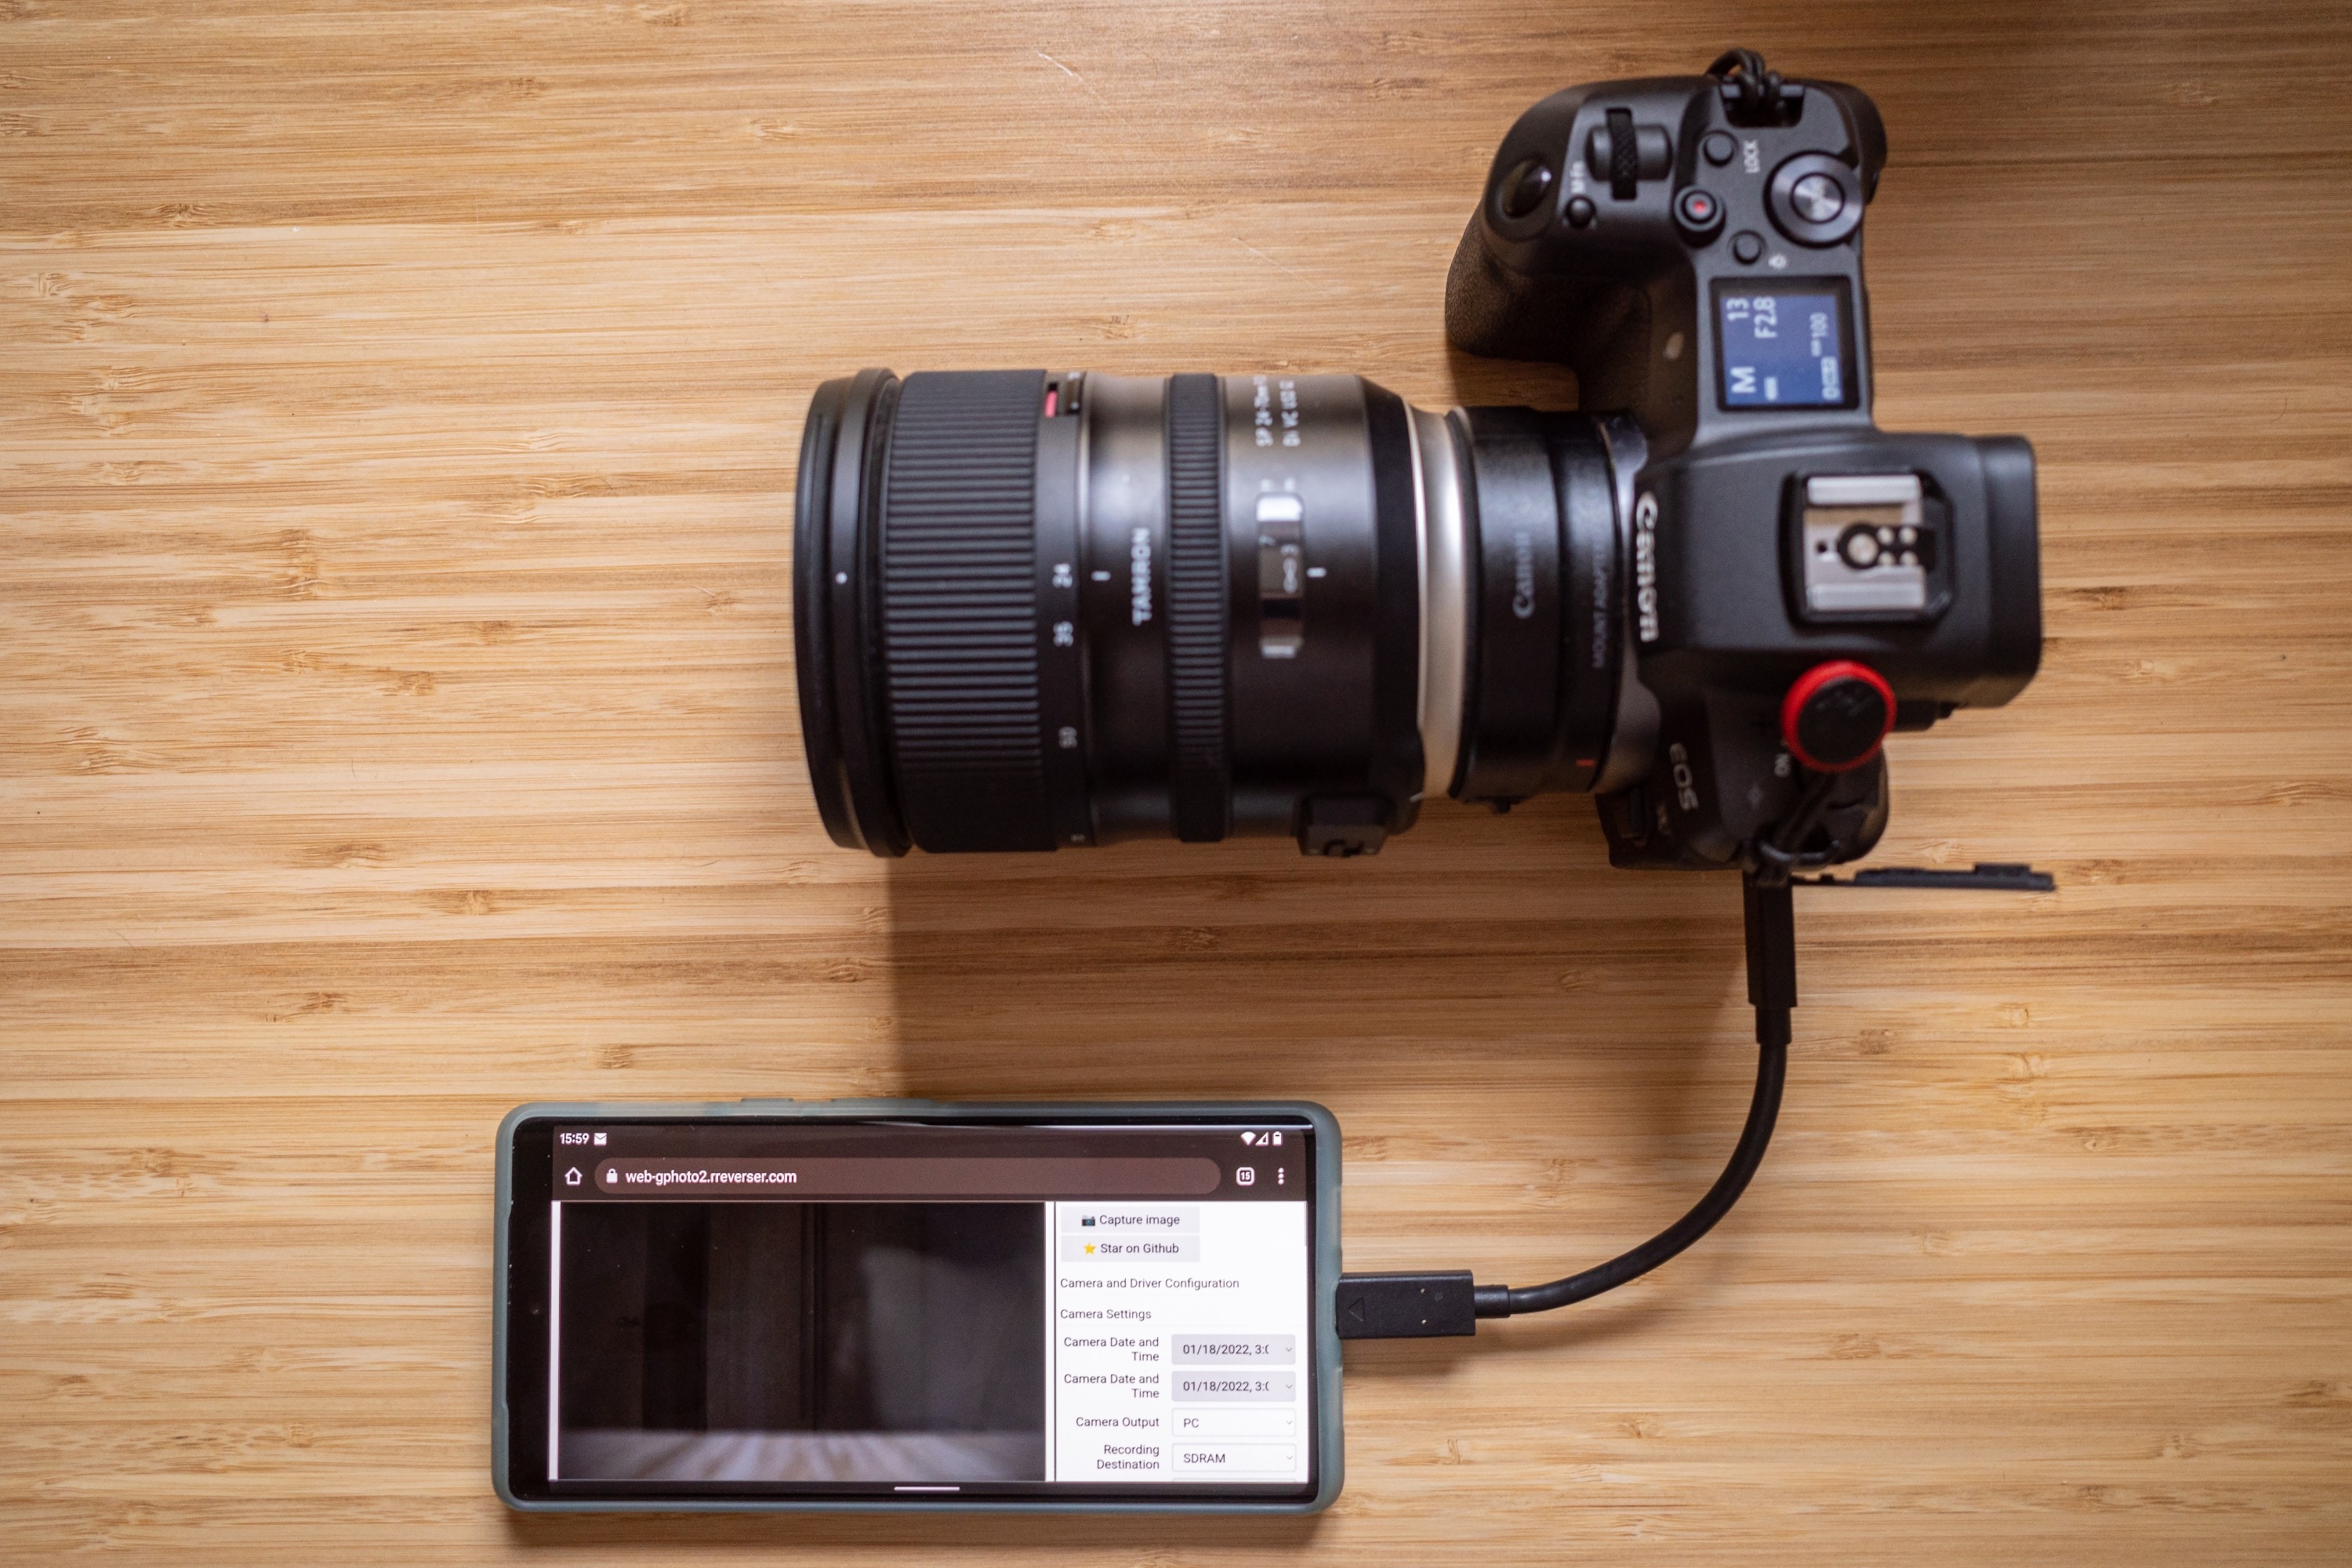 Teléfono Android conectado a una cámara Canon mediante un cable USB-C